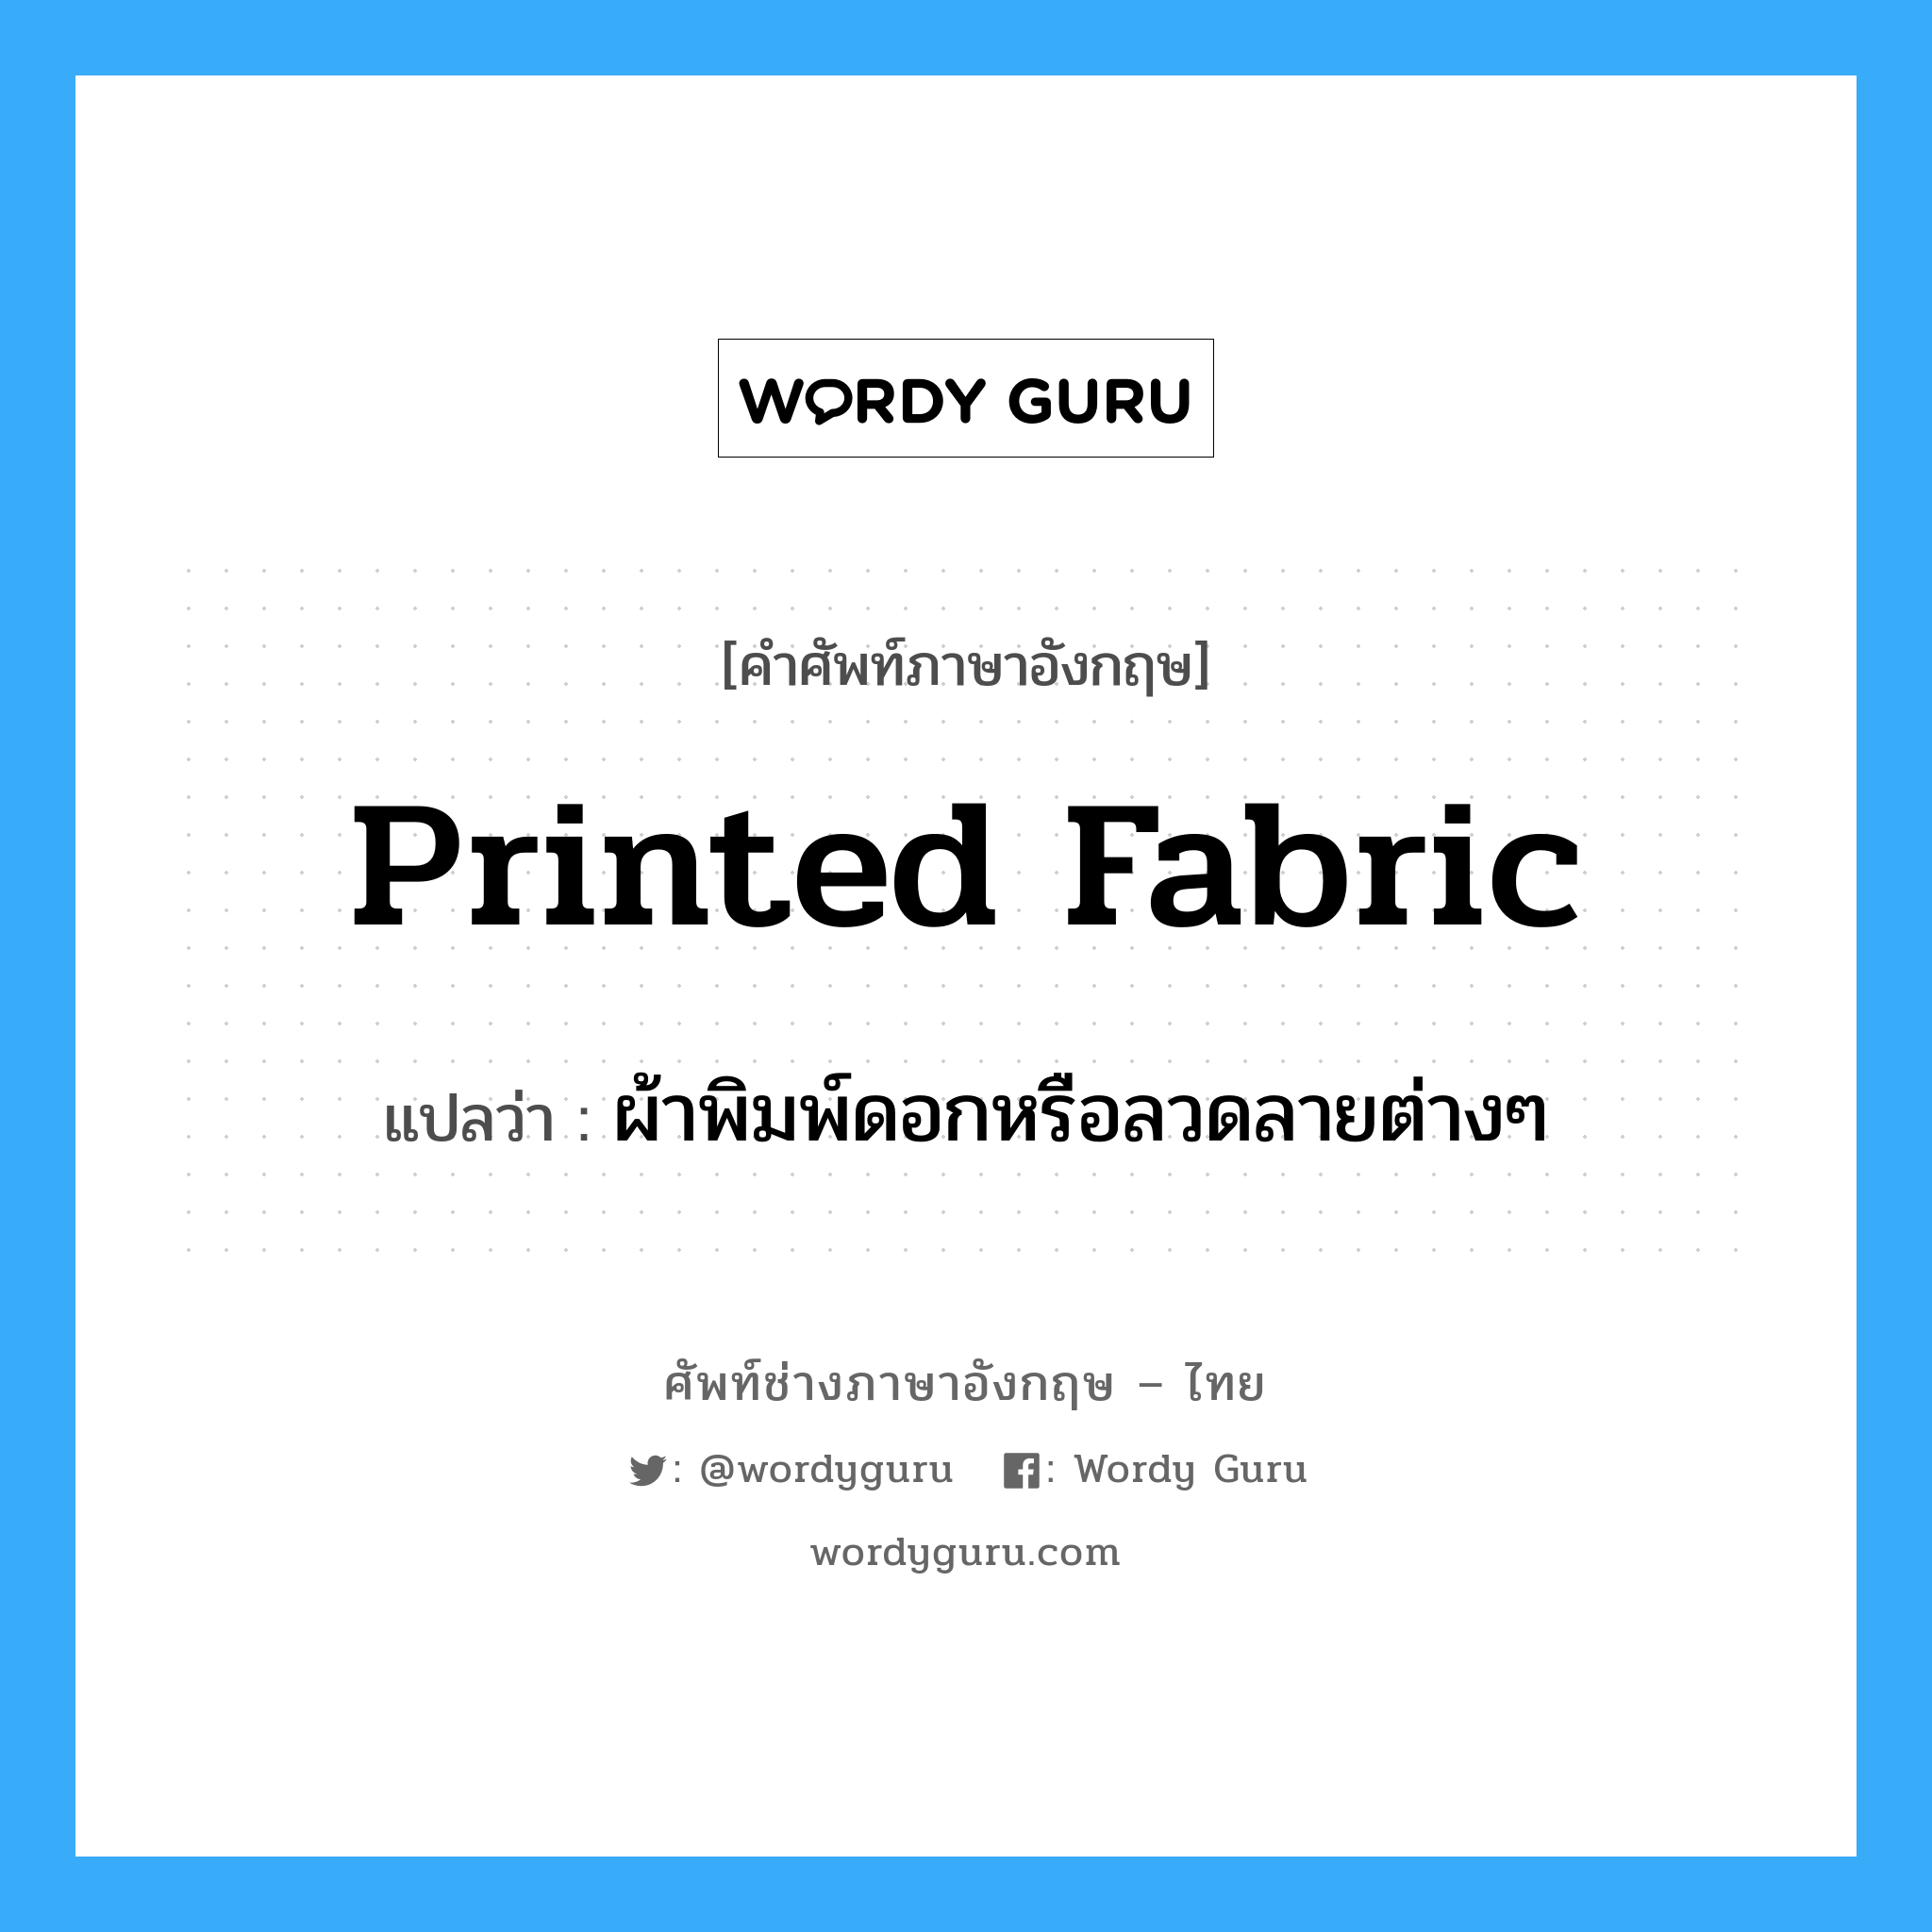 printed fabric แปลว่า?, คำศัพท์ช่างภาษาอังกฤษ - ไทย printed fabric คำศัพท์ภาษาอังกฤษ printed fabric แปลว่า ผ้าพิมพ์ดอกหรือลวดลายต่างๆ